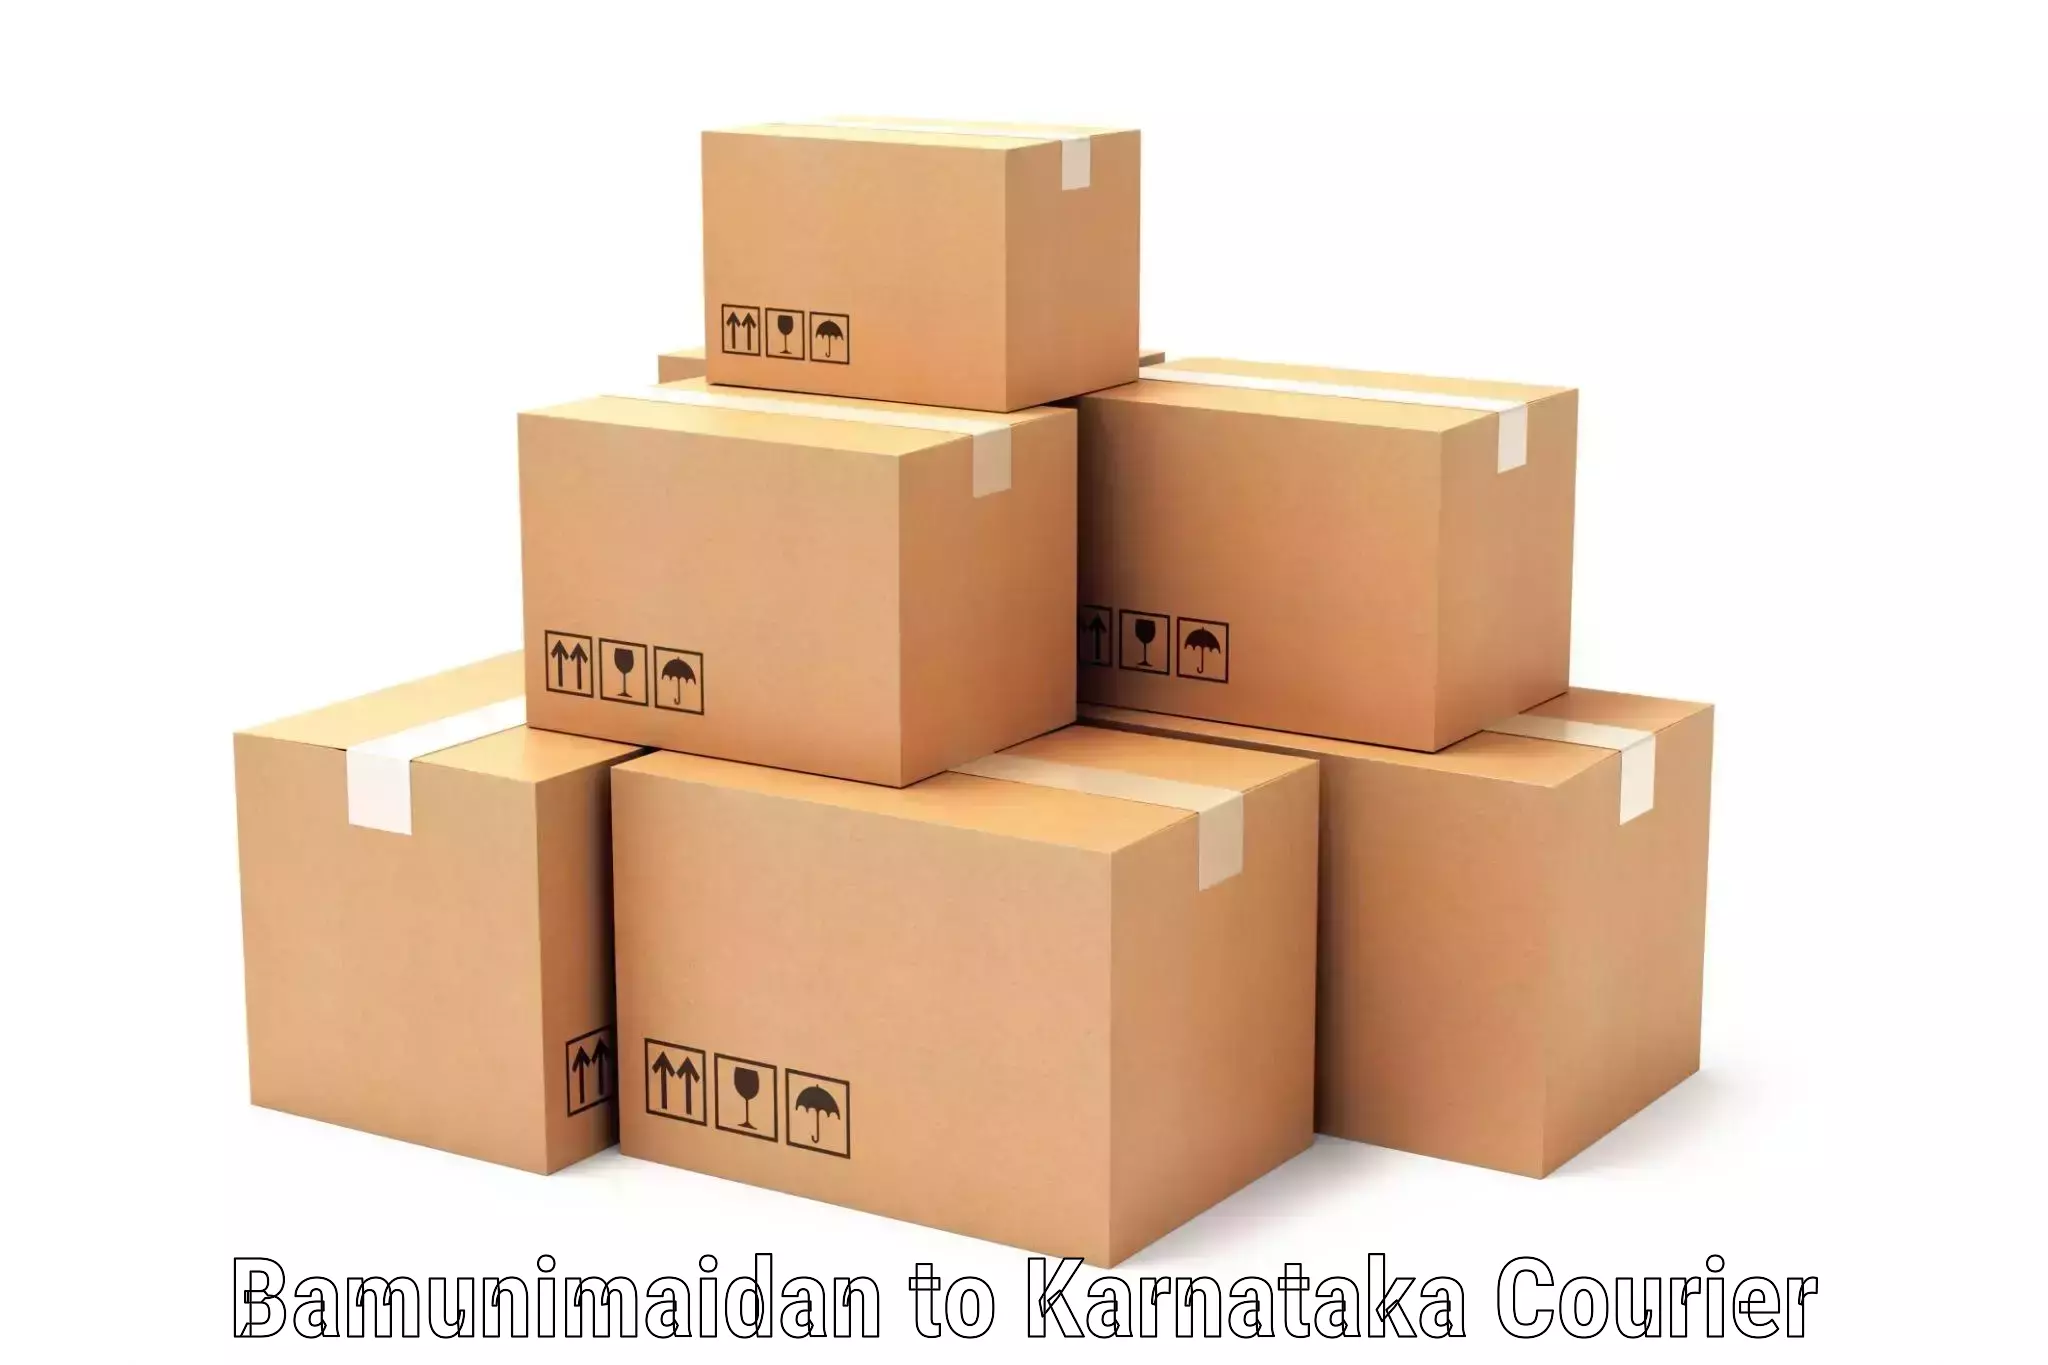 High-capacity shipping options Bamunimaidan to Karnataka